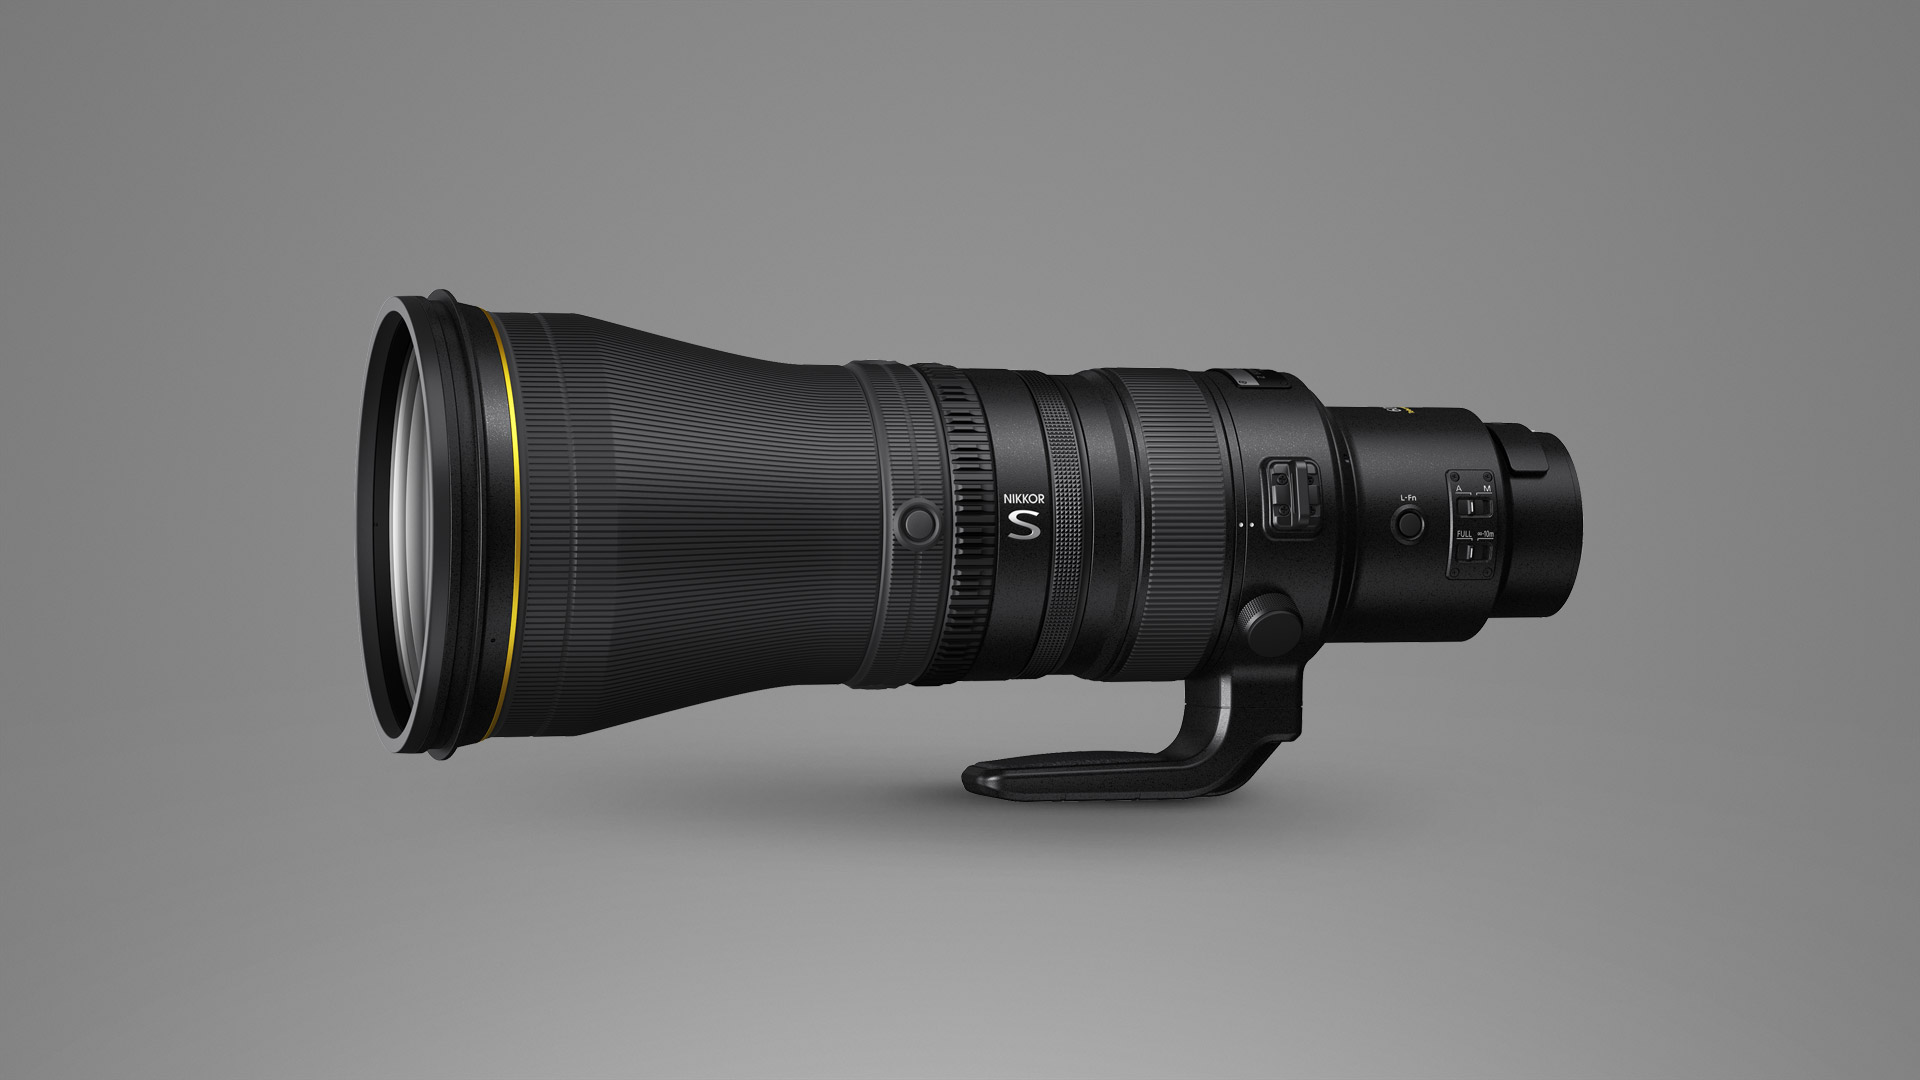 Nikkor Z 600 mm f/4 TC VR S